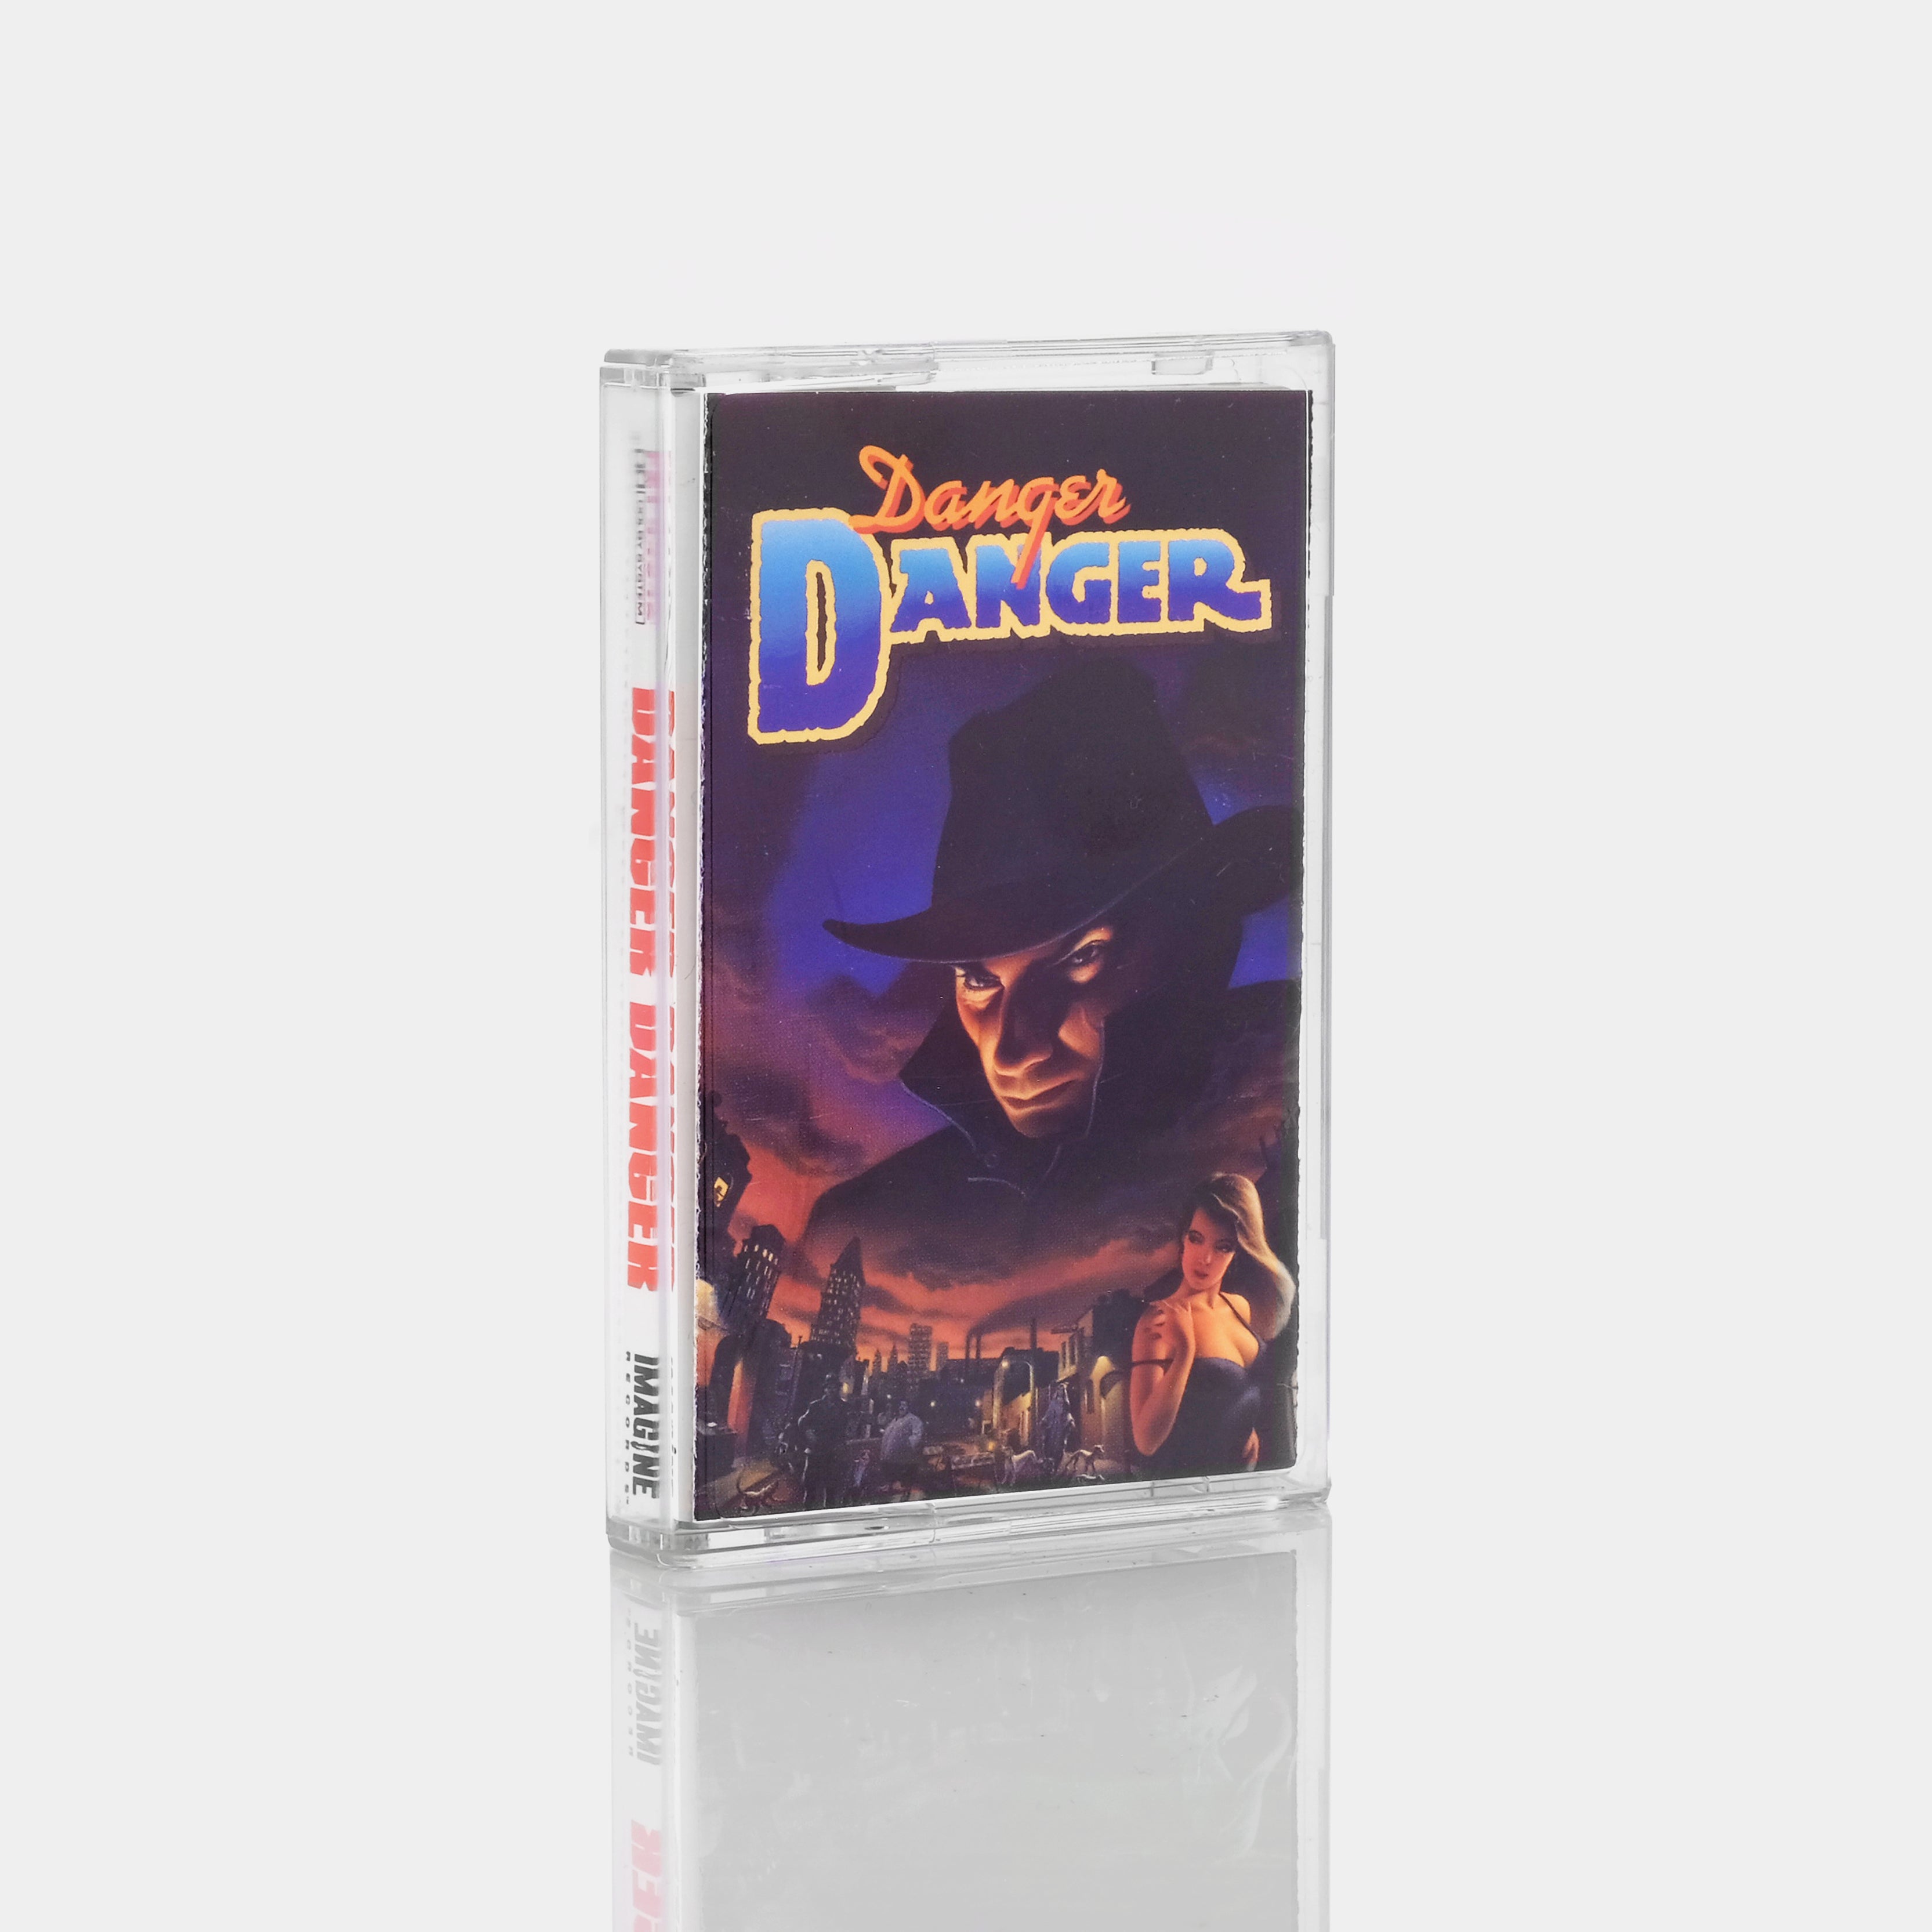 Danger Danger - Danger Danger Cassette Tape